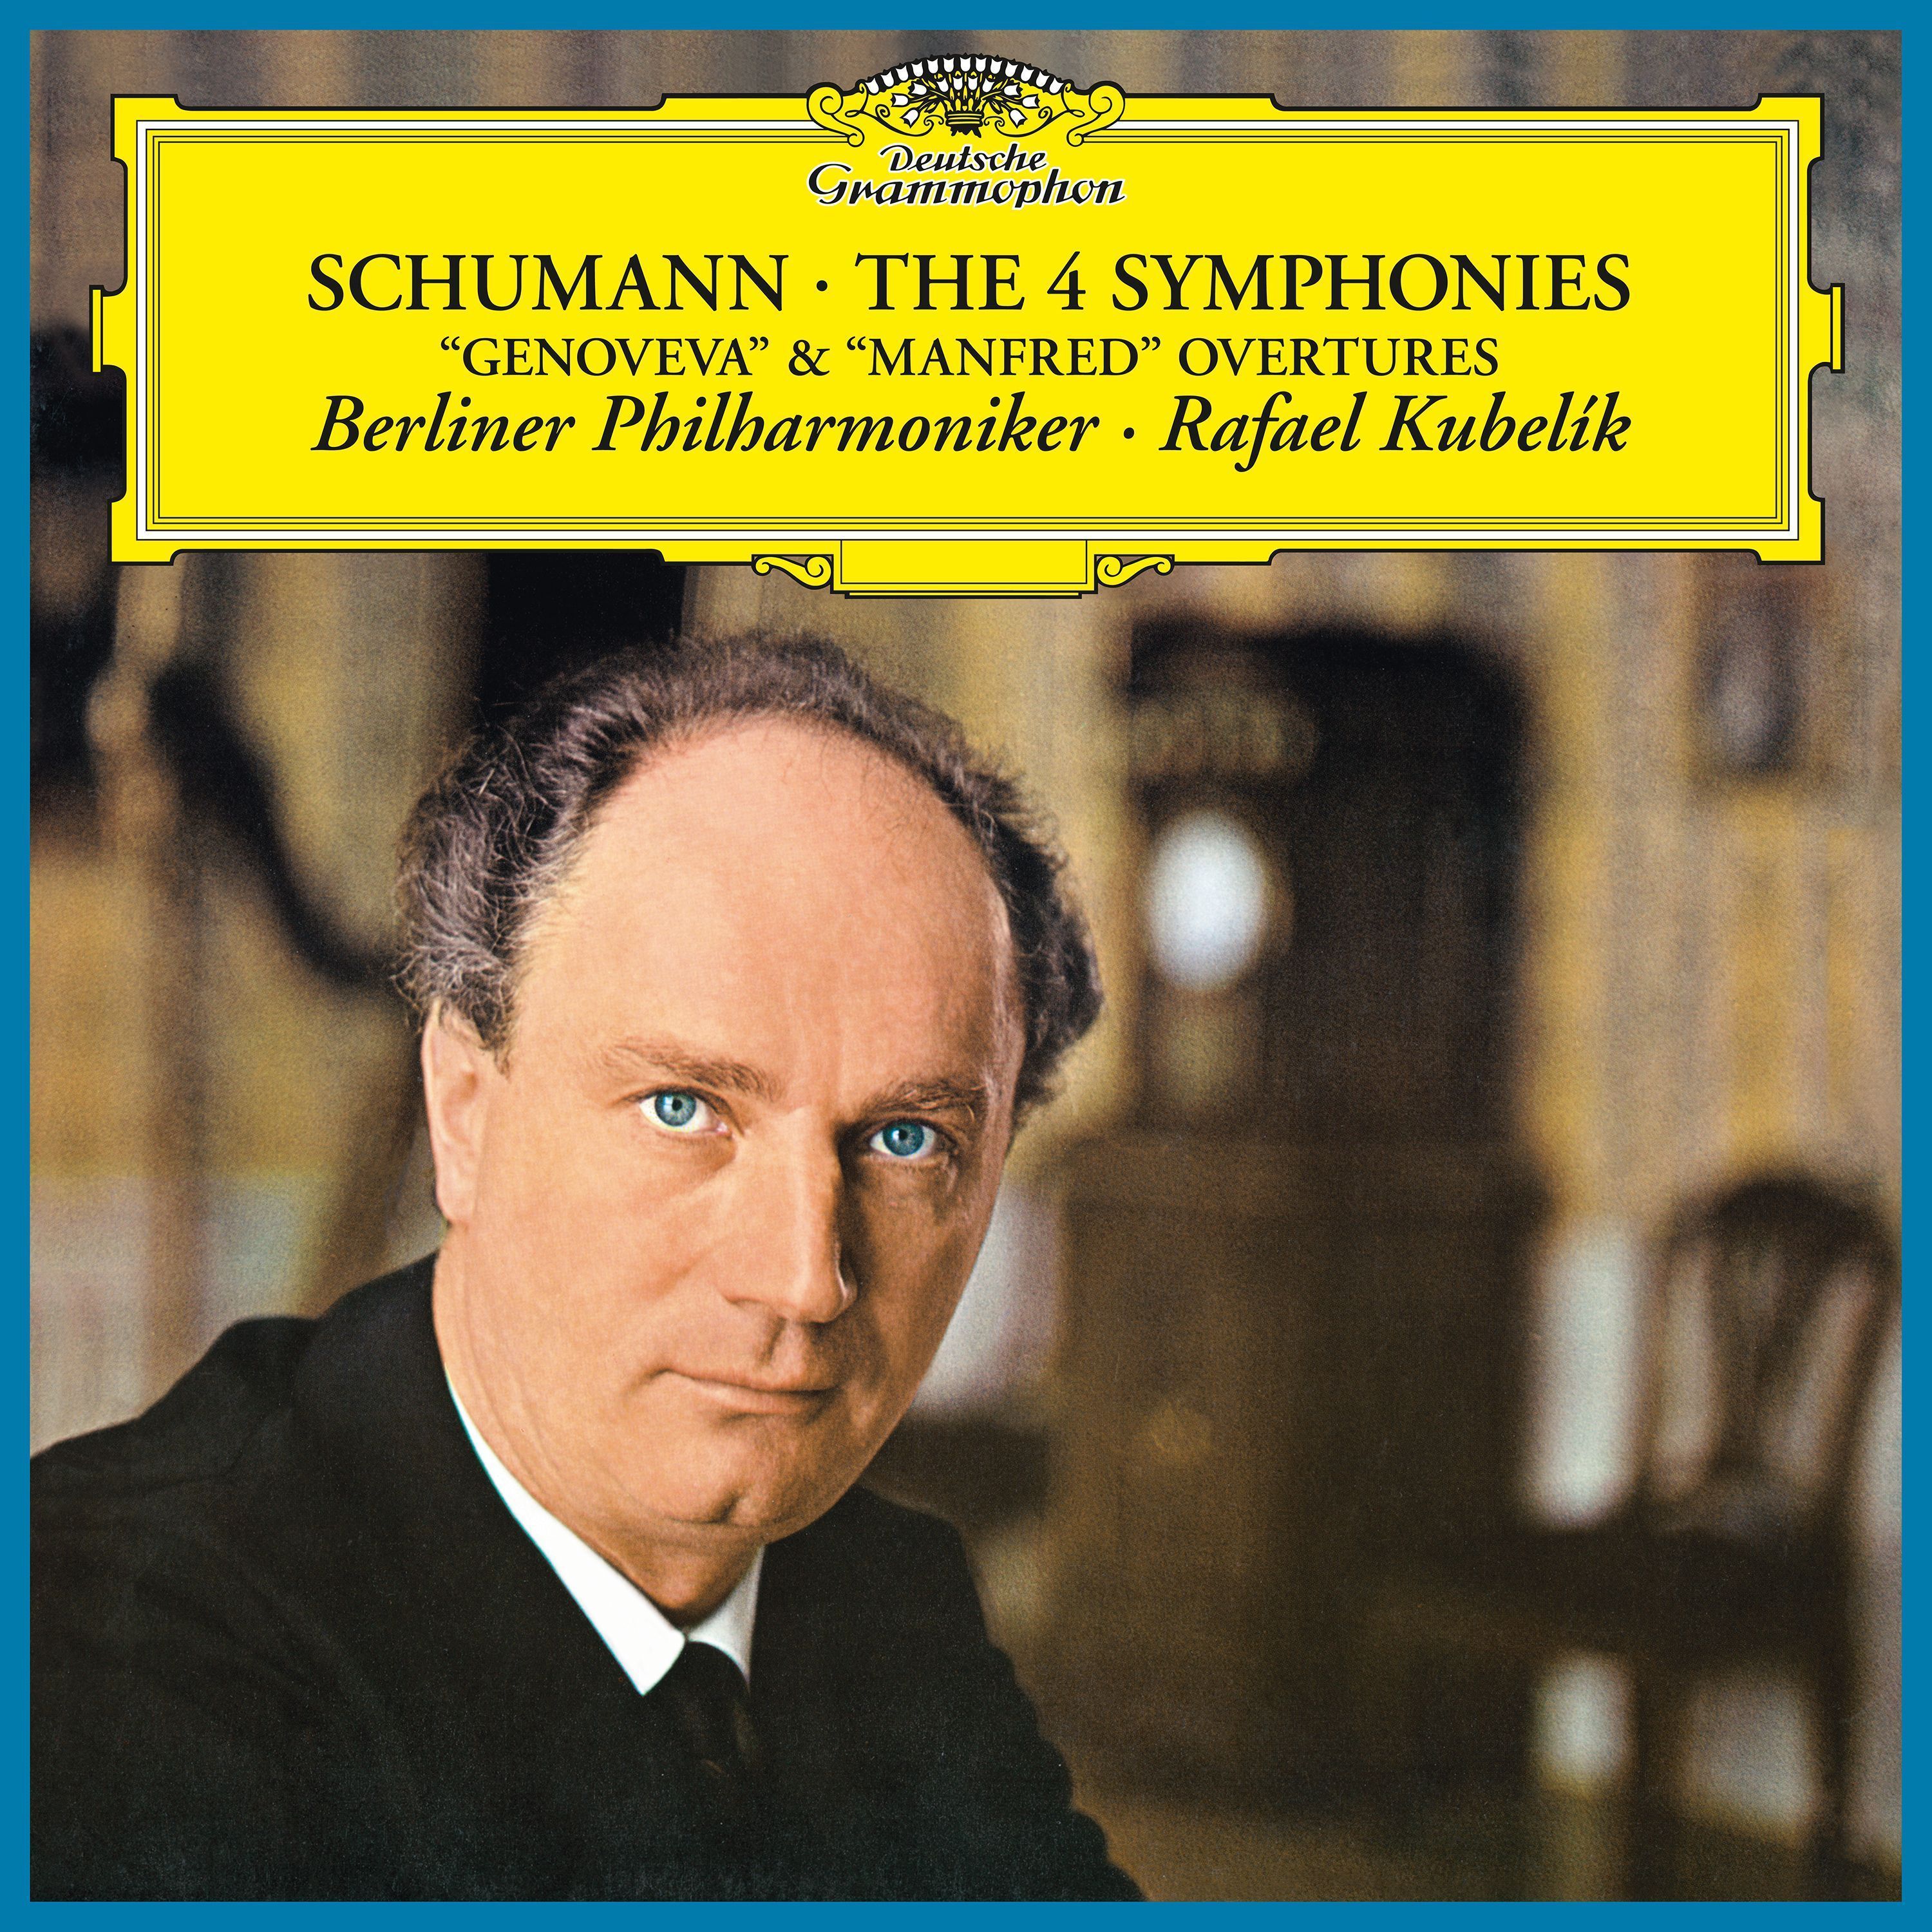 Rafael Kubelik, Berliner Philharmoniker The 4 Symphonies Deutsche Grammophon